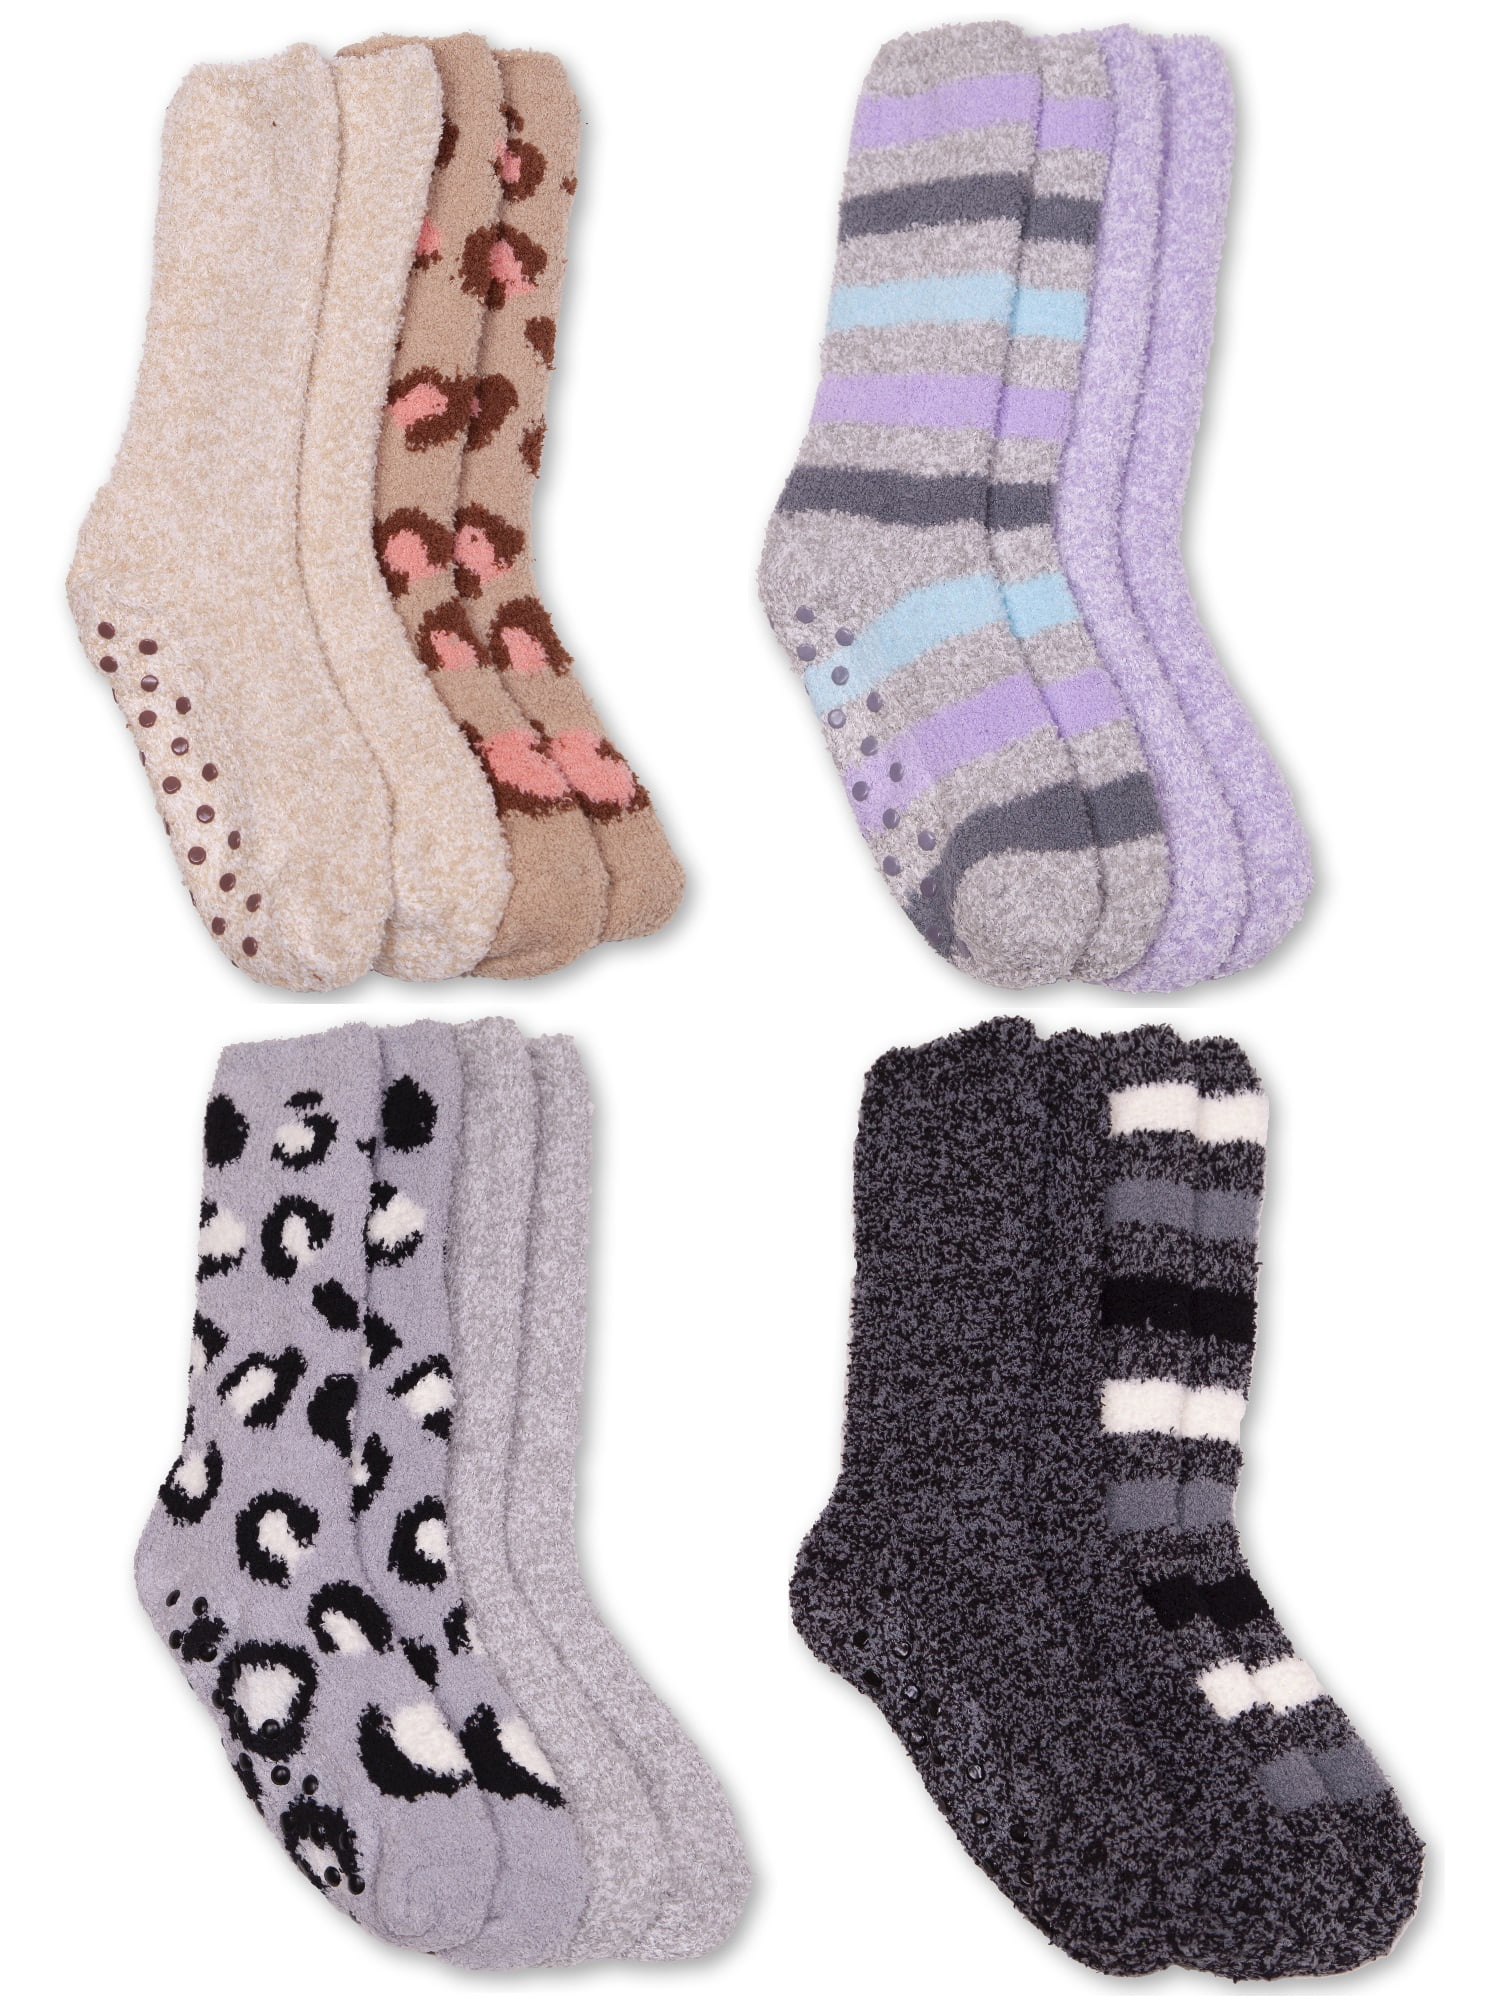 Fuzzy Babba, Women's Fashion Yummy Cozy Crew Socks, 8-Pack, Size 4-10 ...